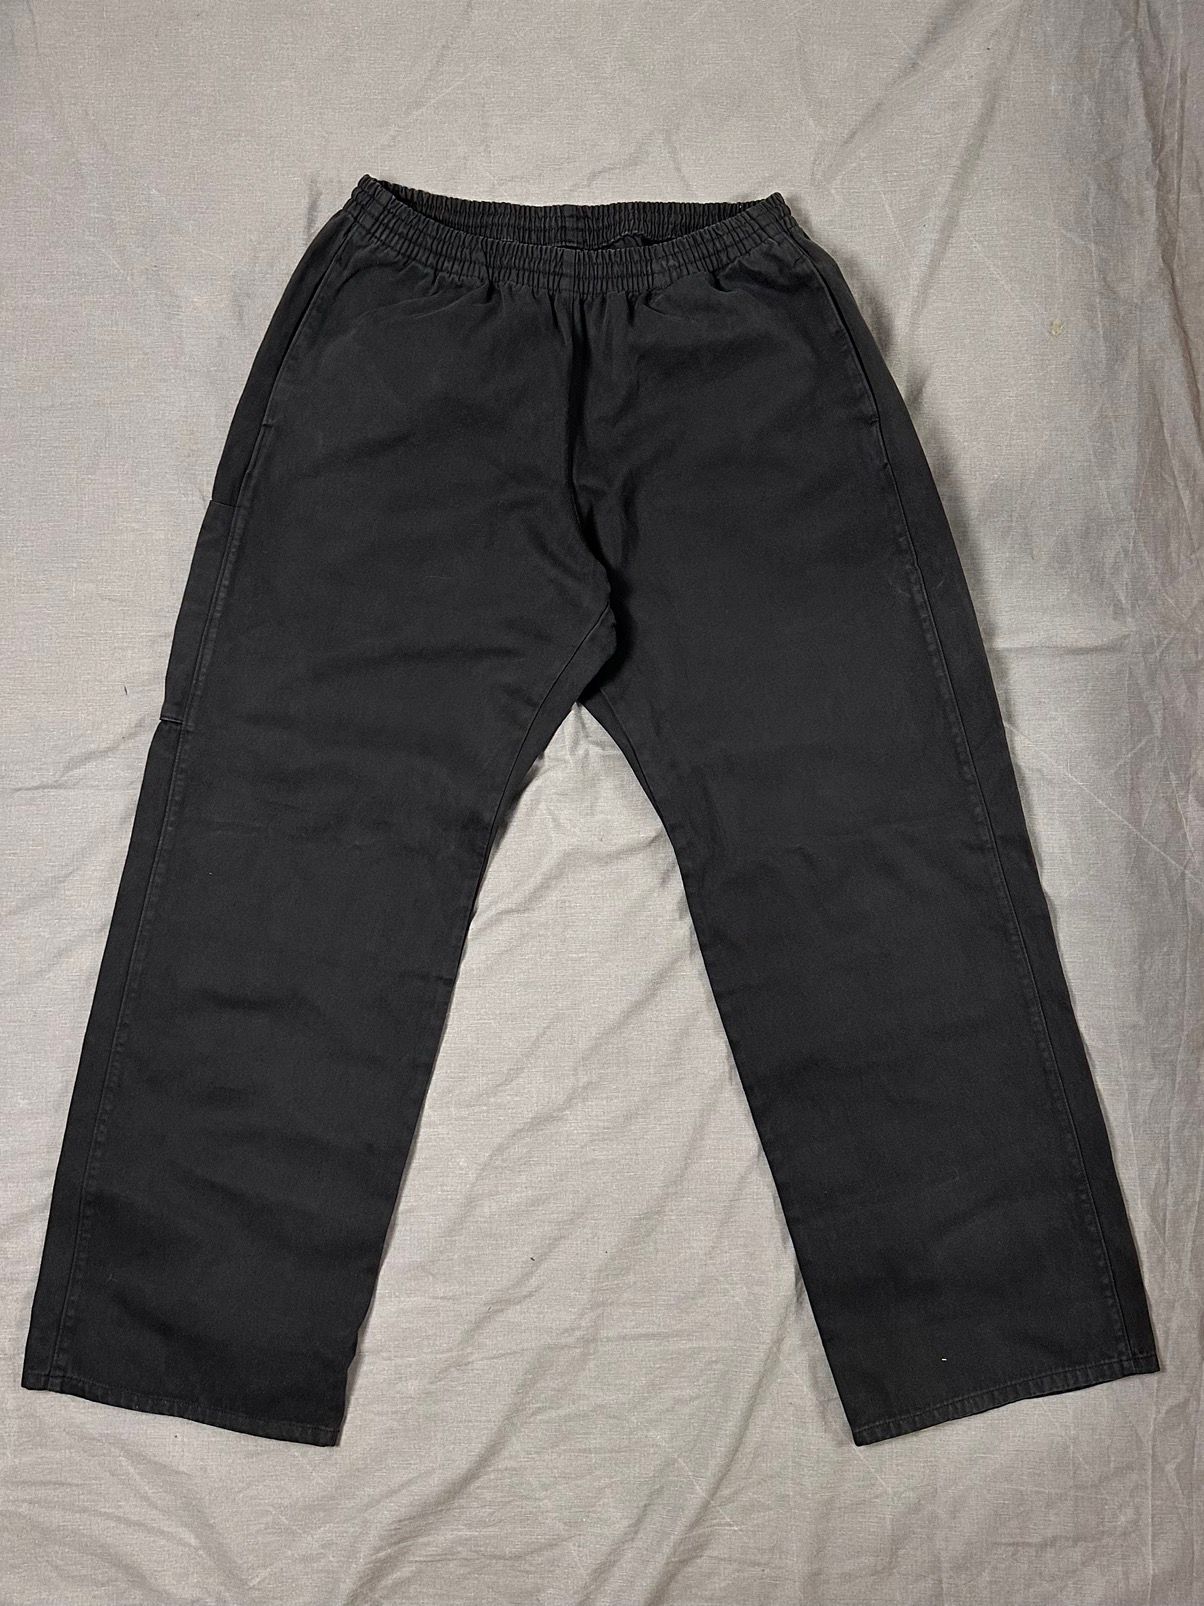 Pre-owned Gap X Kanye West Yeezy Gap Pants Unrealised Sateen Baggy Cargo Balenciaga In Black